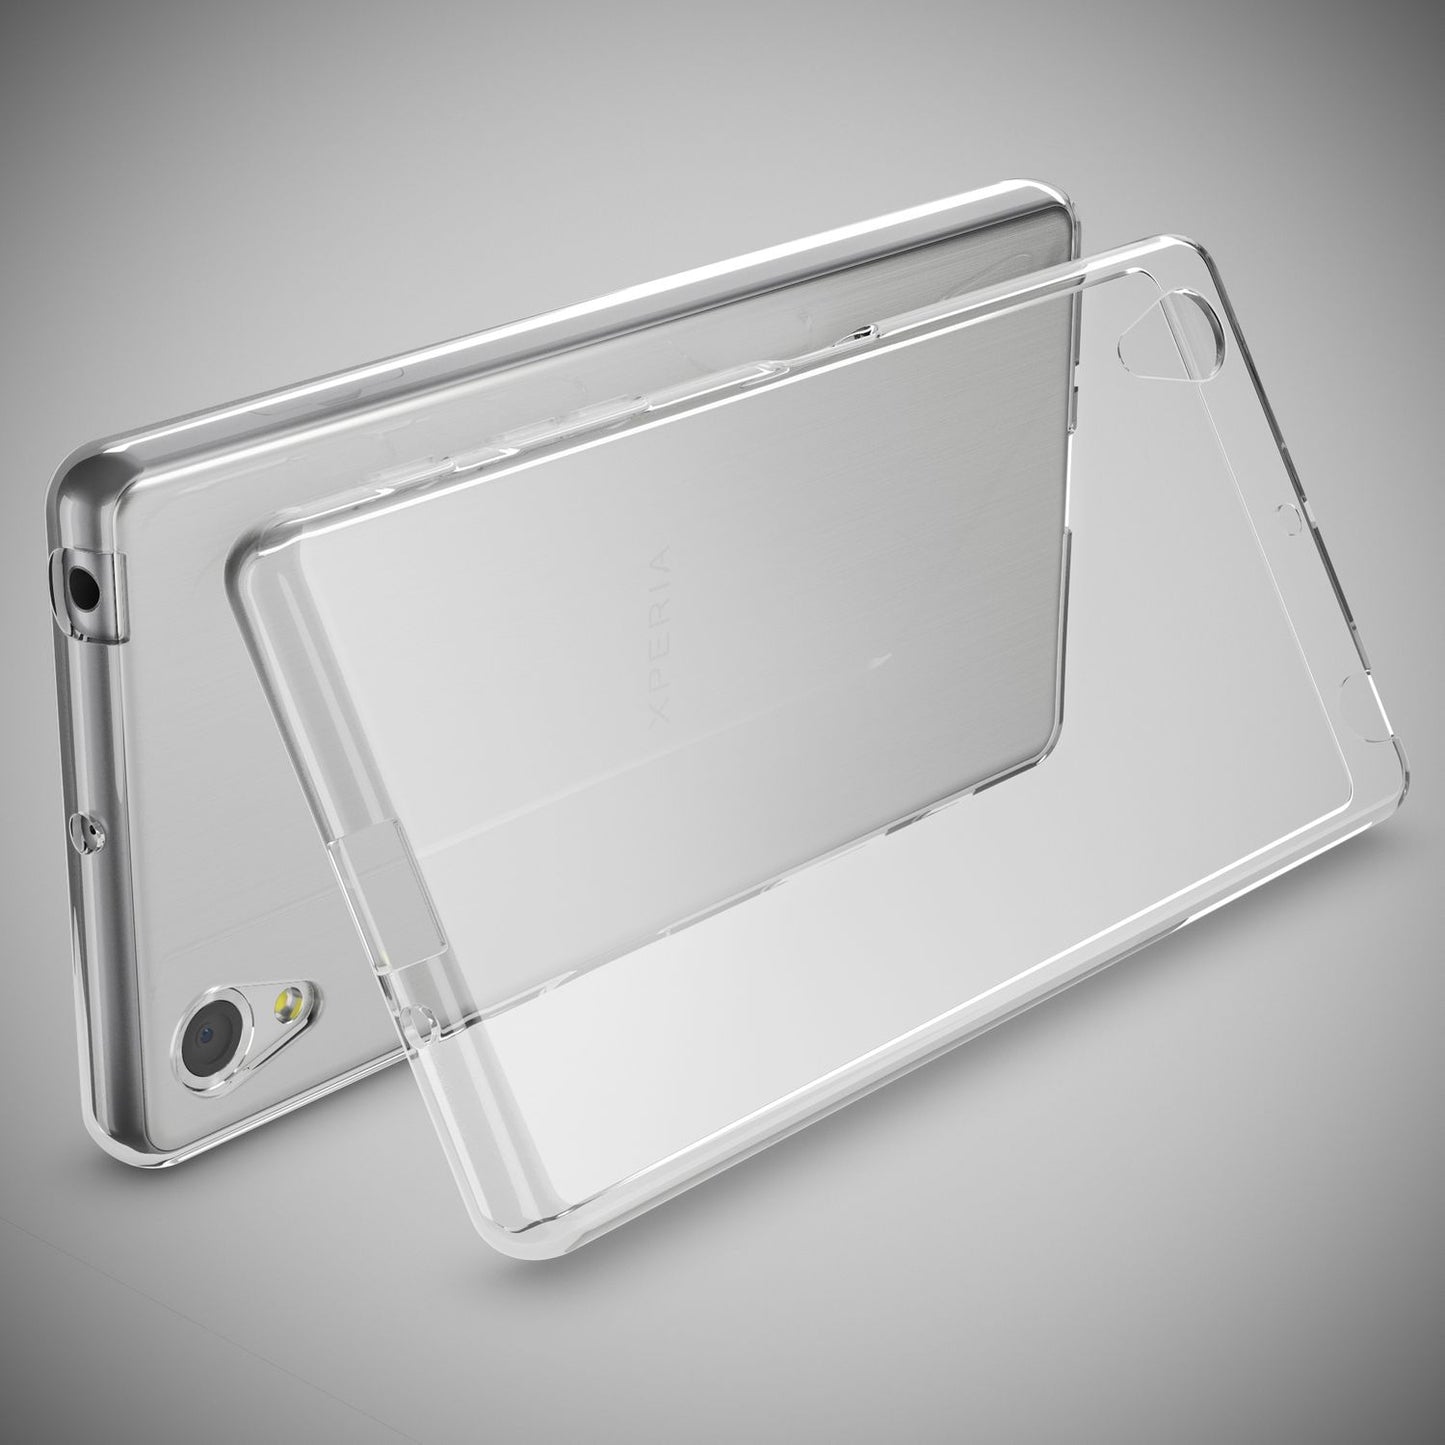 NALIA Hülle für Sony Xperia X, Transparente Schutzhülle Case Cover Handyhülle